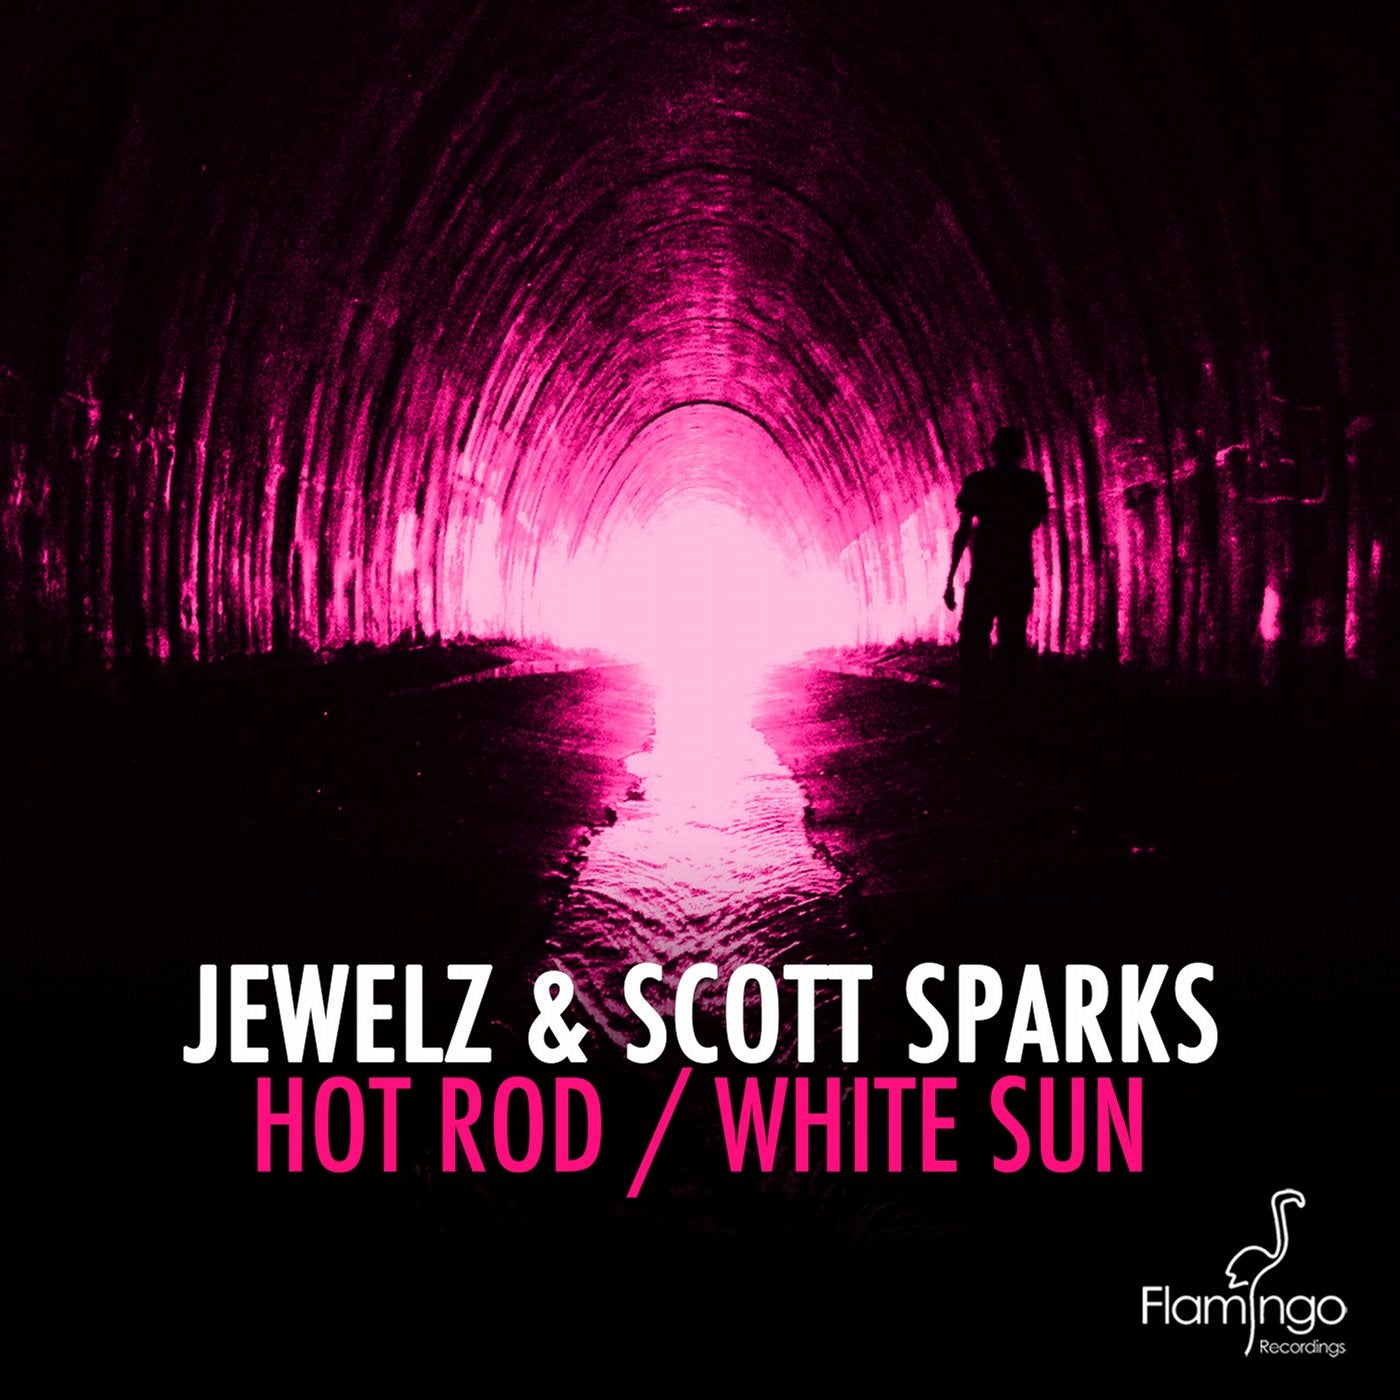 Hot Rod / White Sun